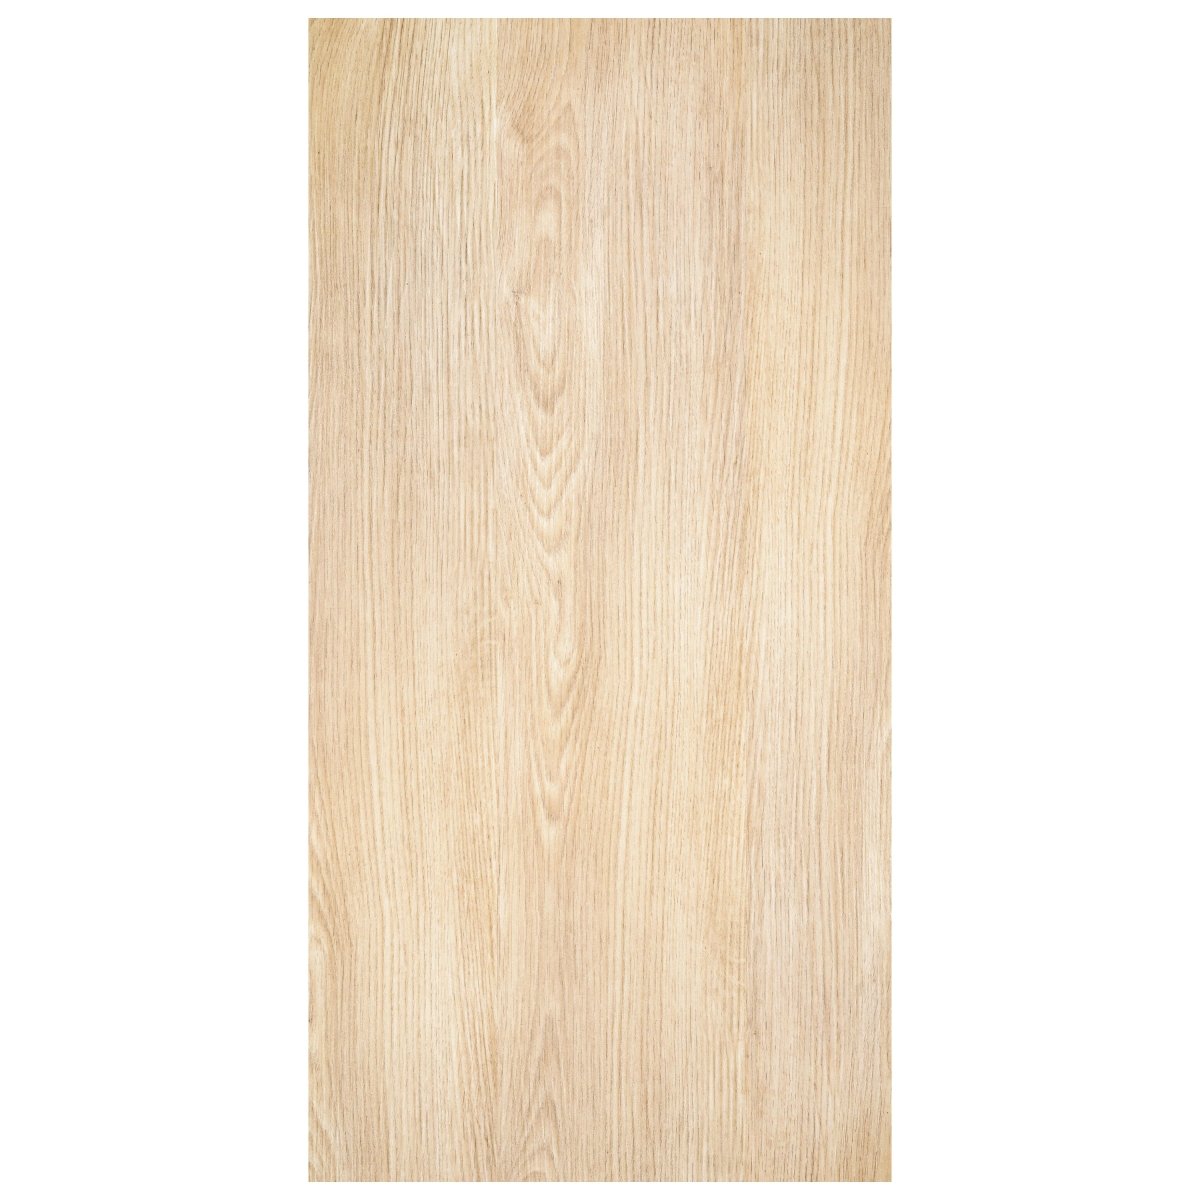 Türtapete helles Holz, Echtholz, braun, beige M1237 - Bild 2